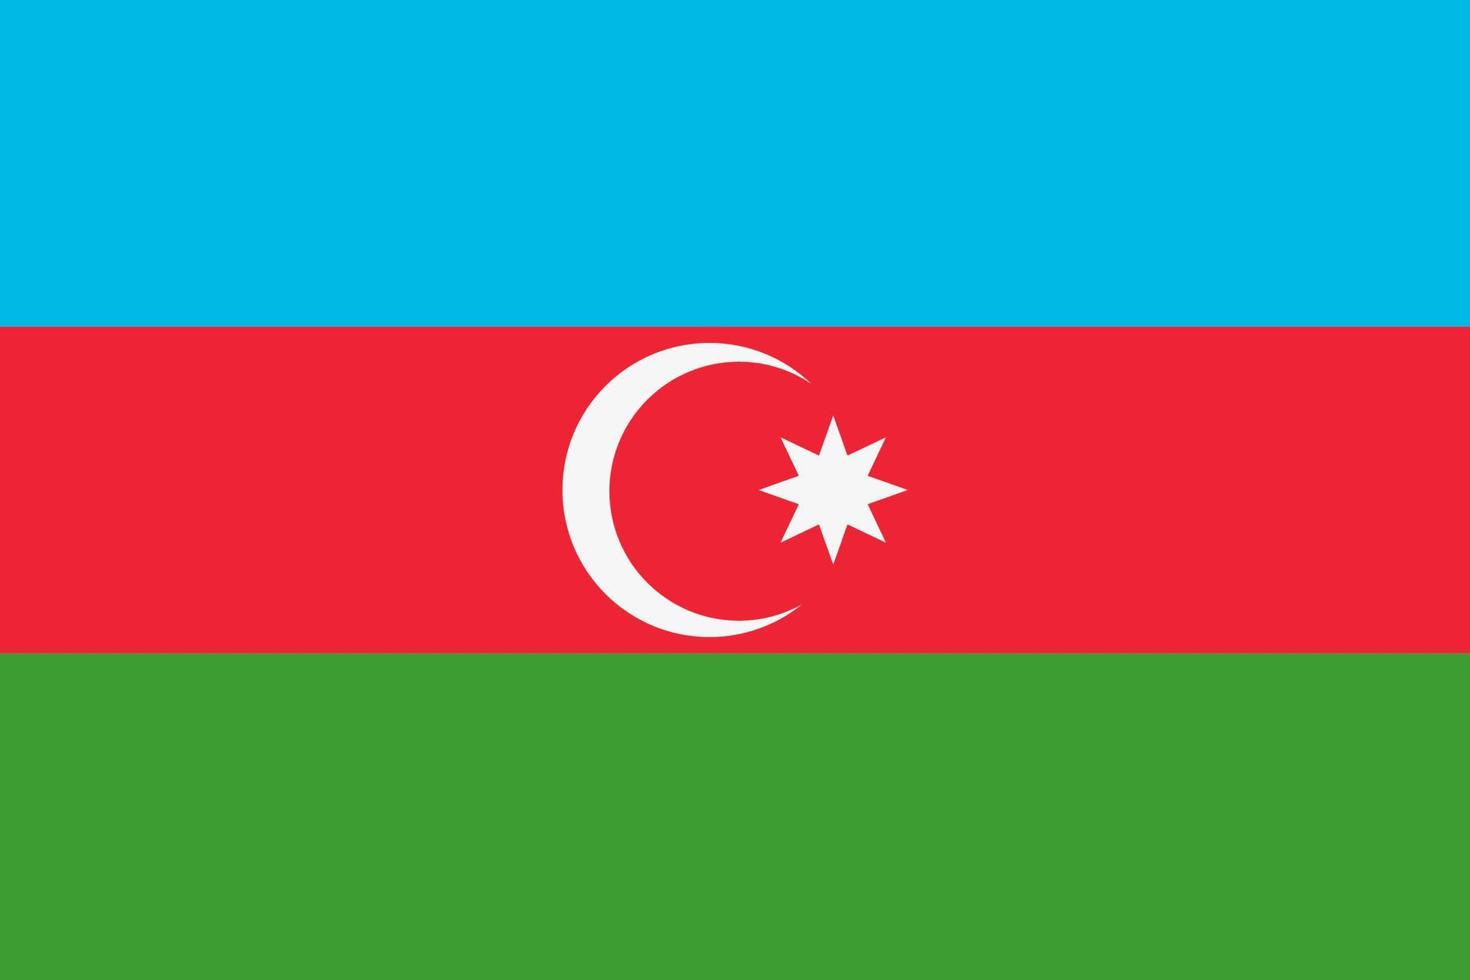 Azerbaijani flag vector icon. The flag of Azerbaijan